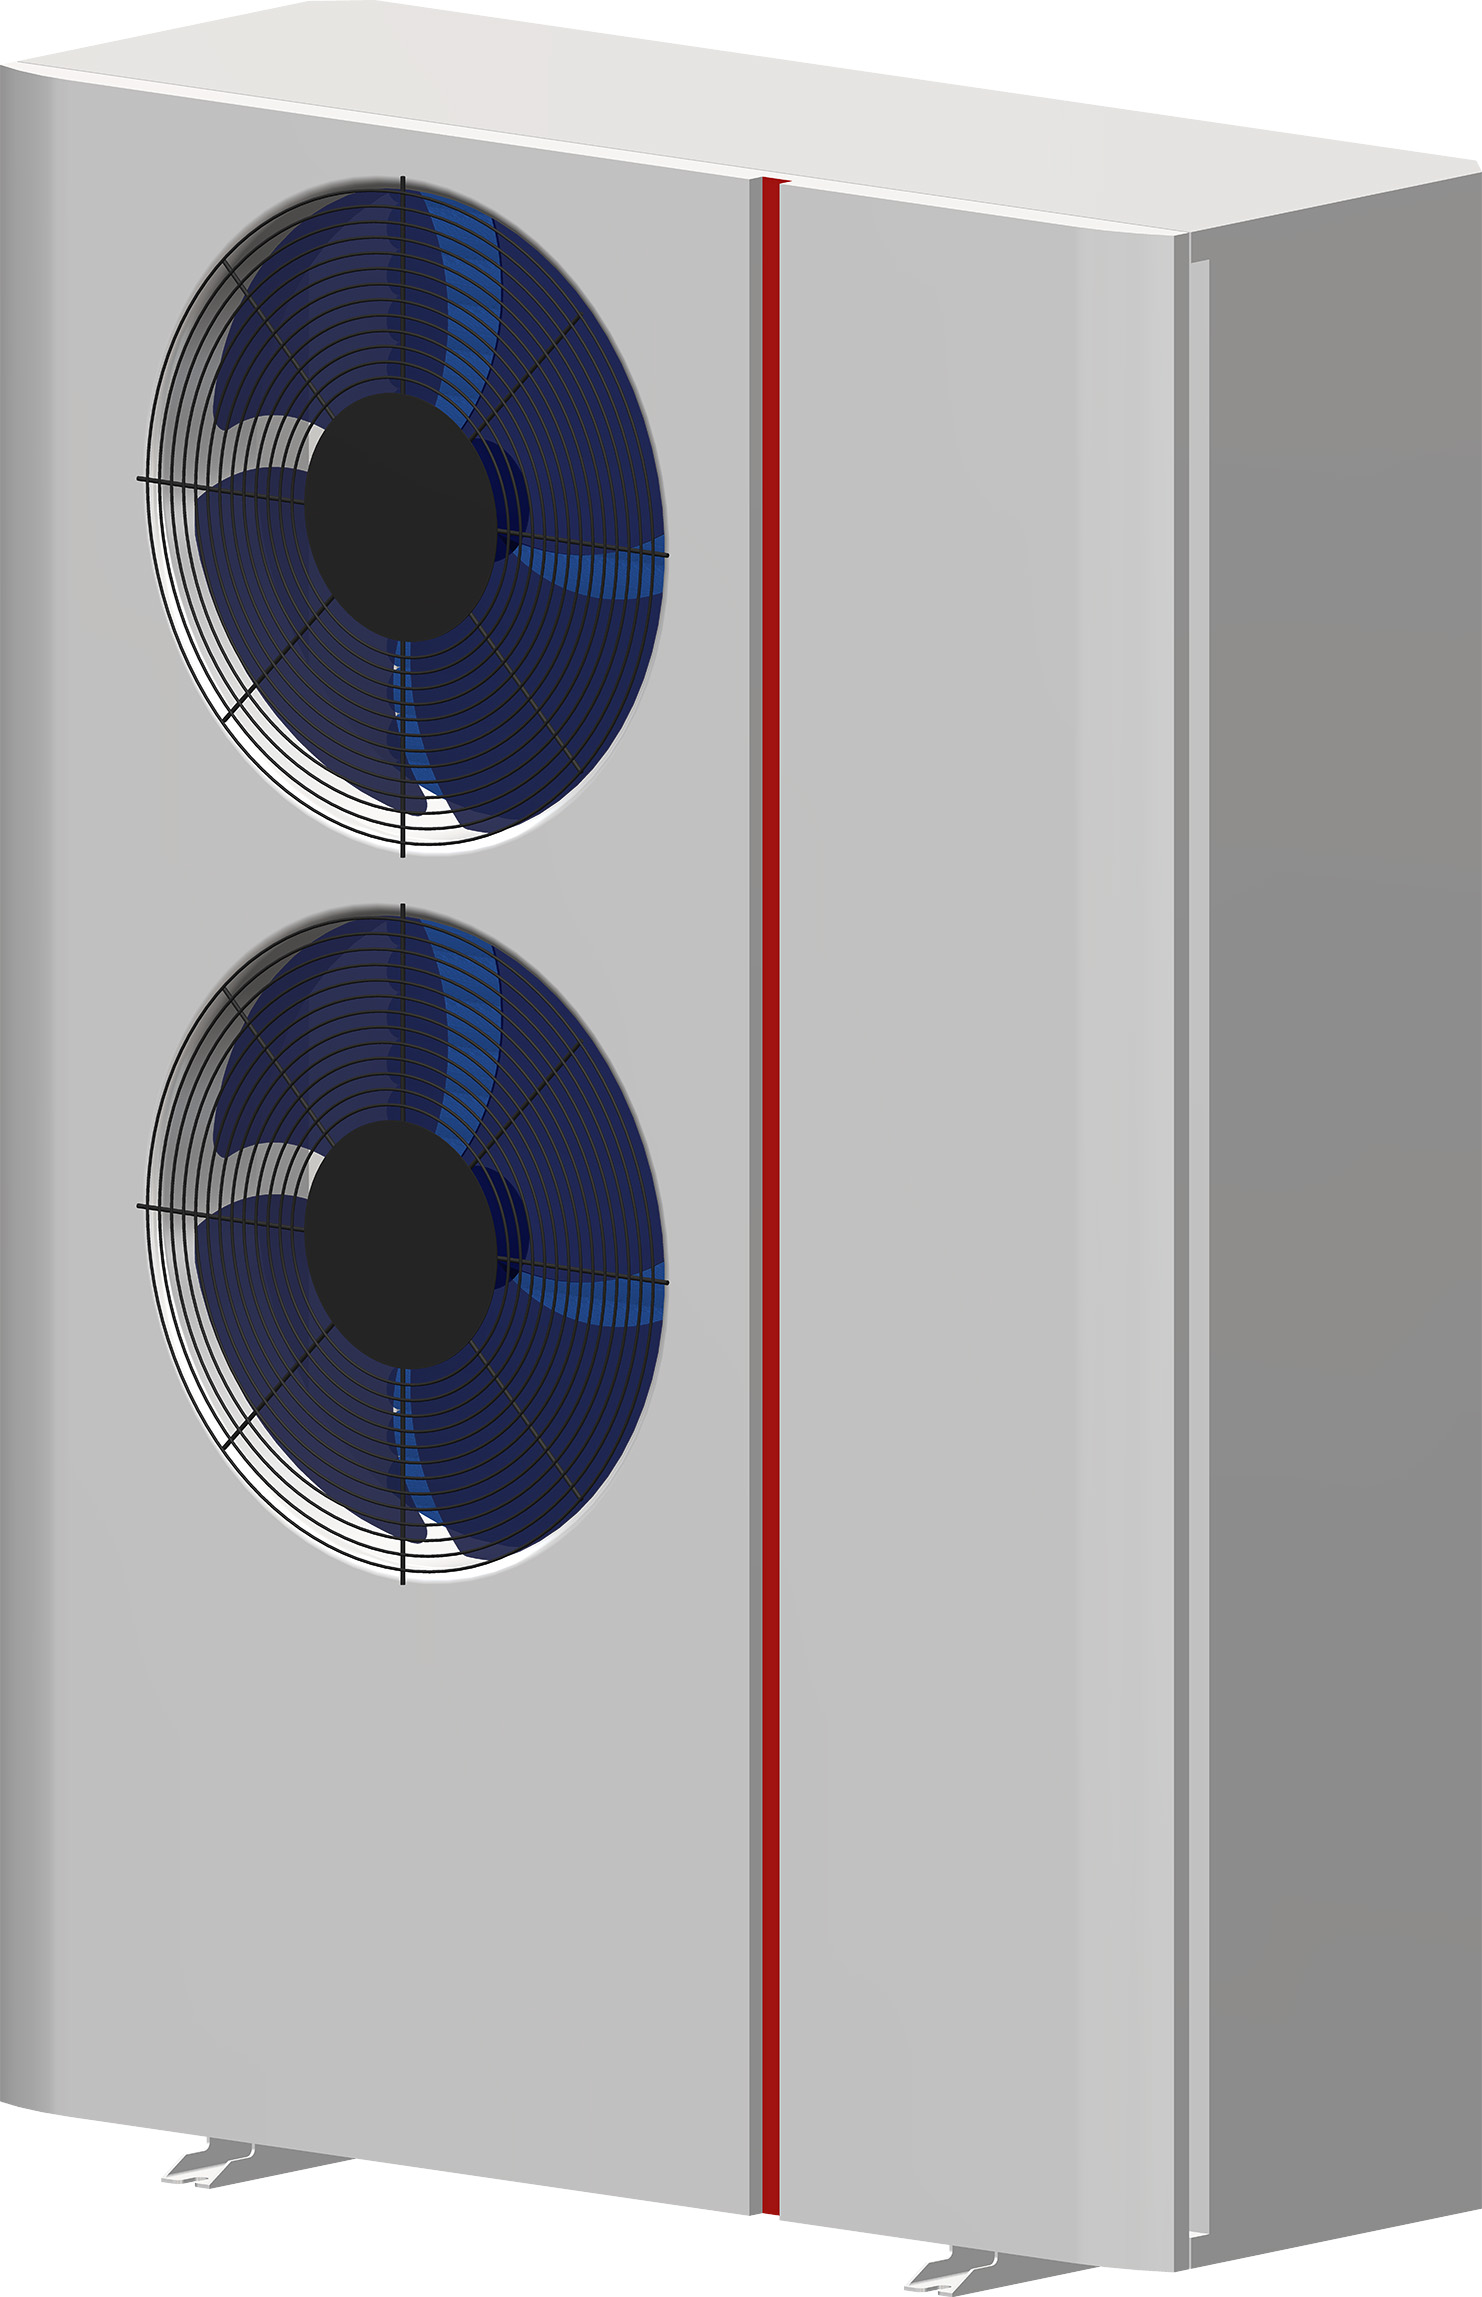 Wärmepumpe mit zwei Ventilatoren und rotem Zierstreifen